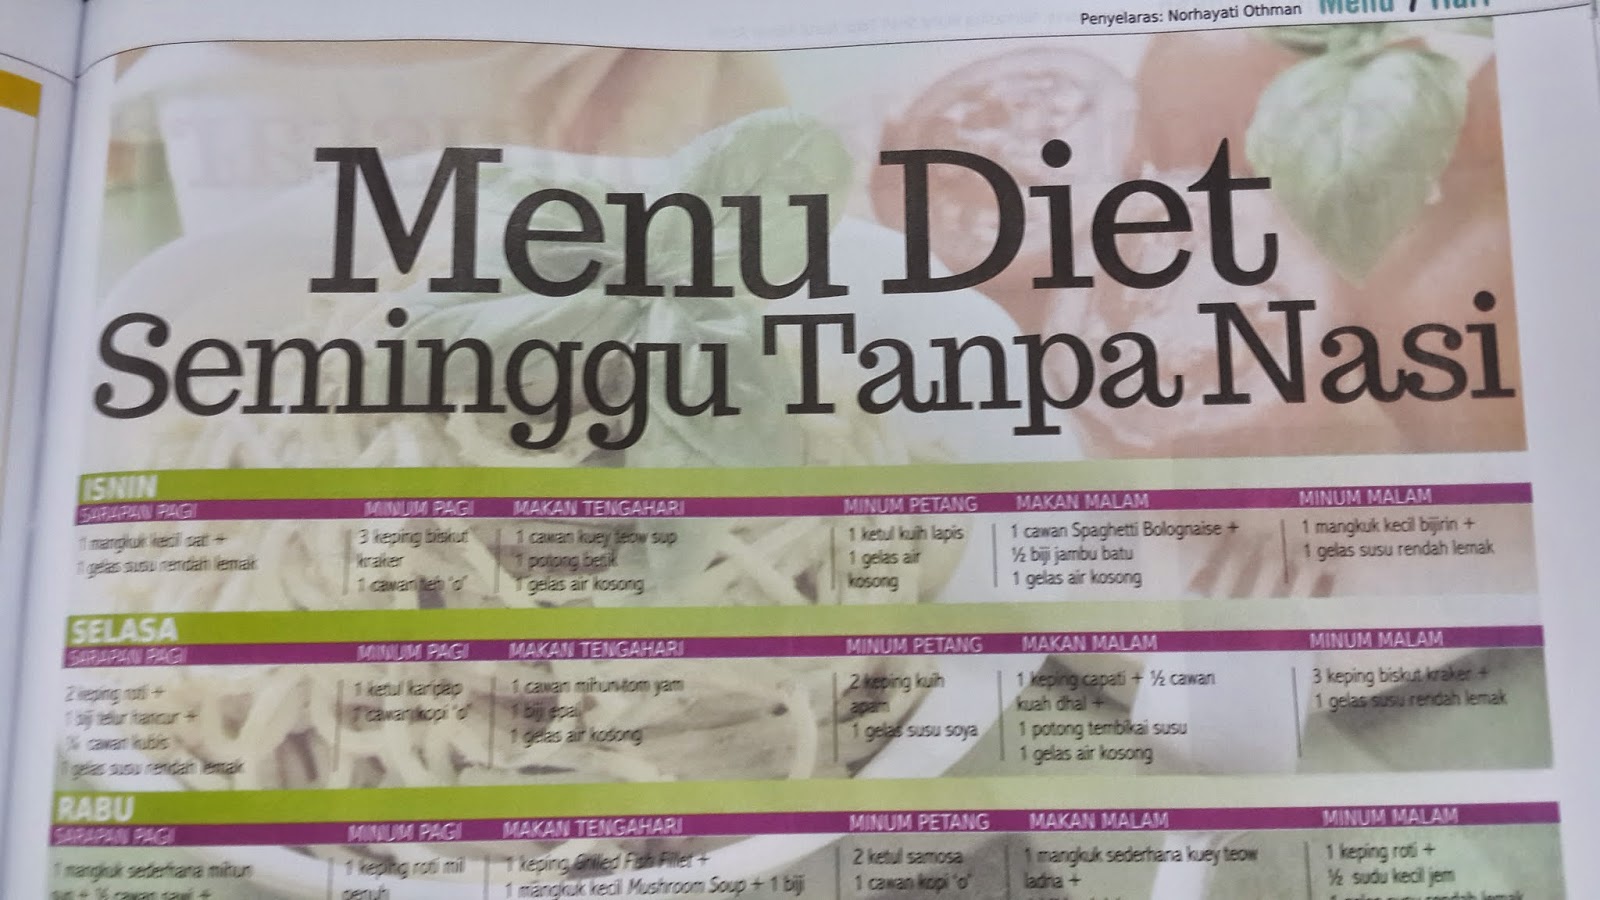 OUR WONDERFUL SIMPLE LIFE: Menu Diet Seminggu Tanpa Nasi